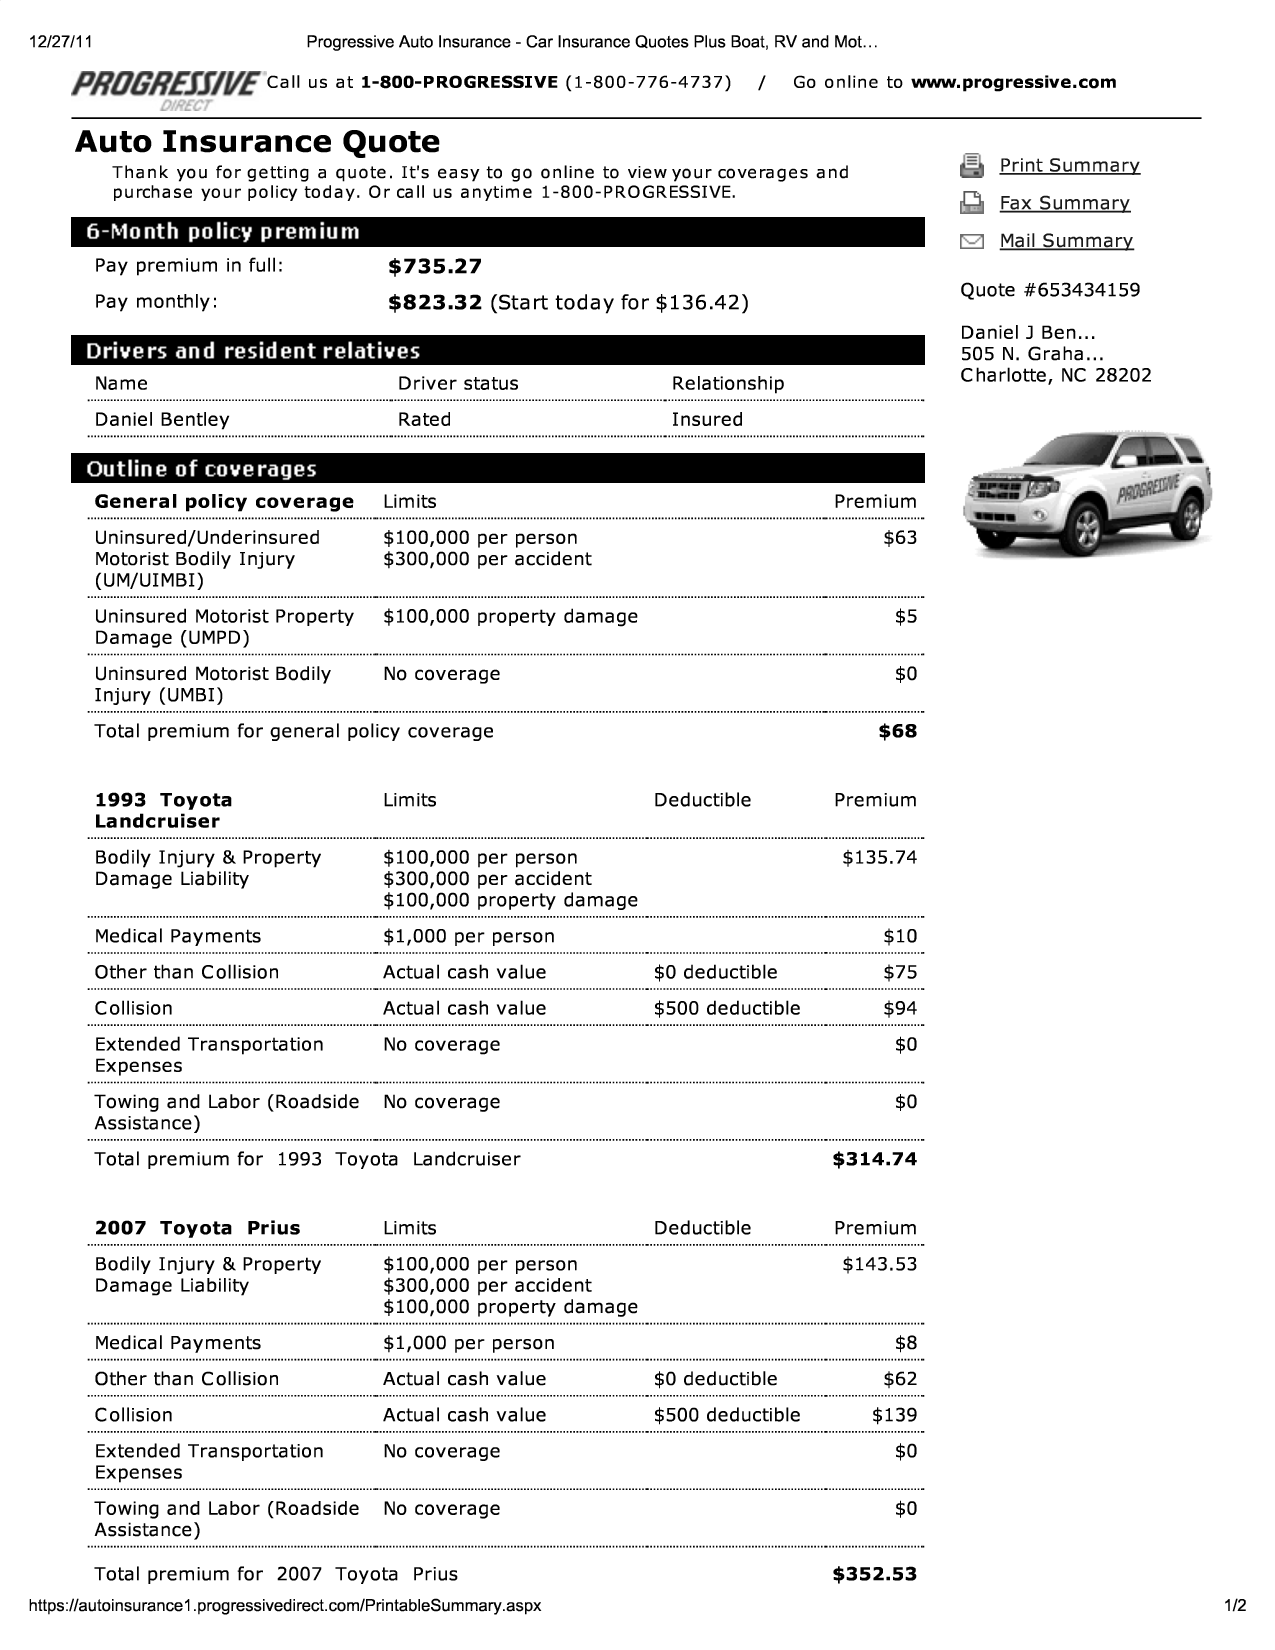 Progressive Auto Insurance Quotes Form. QuotesGram